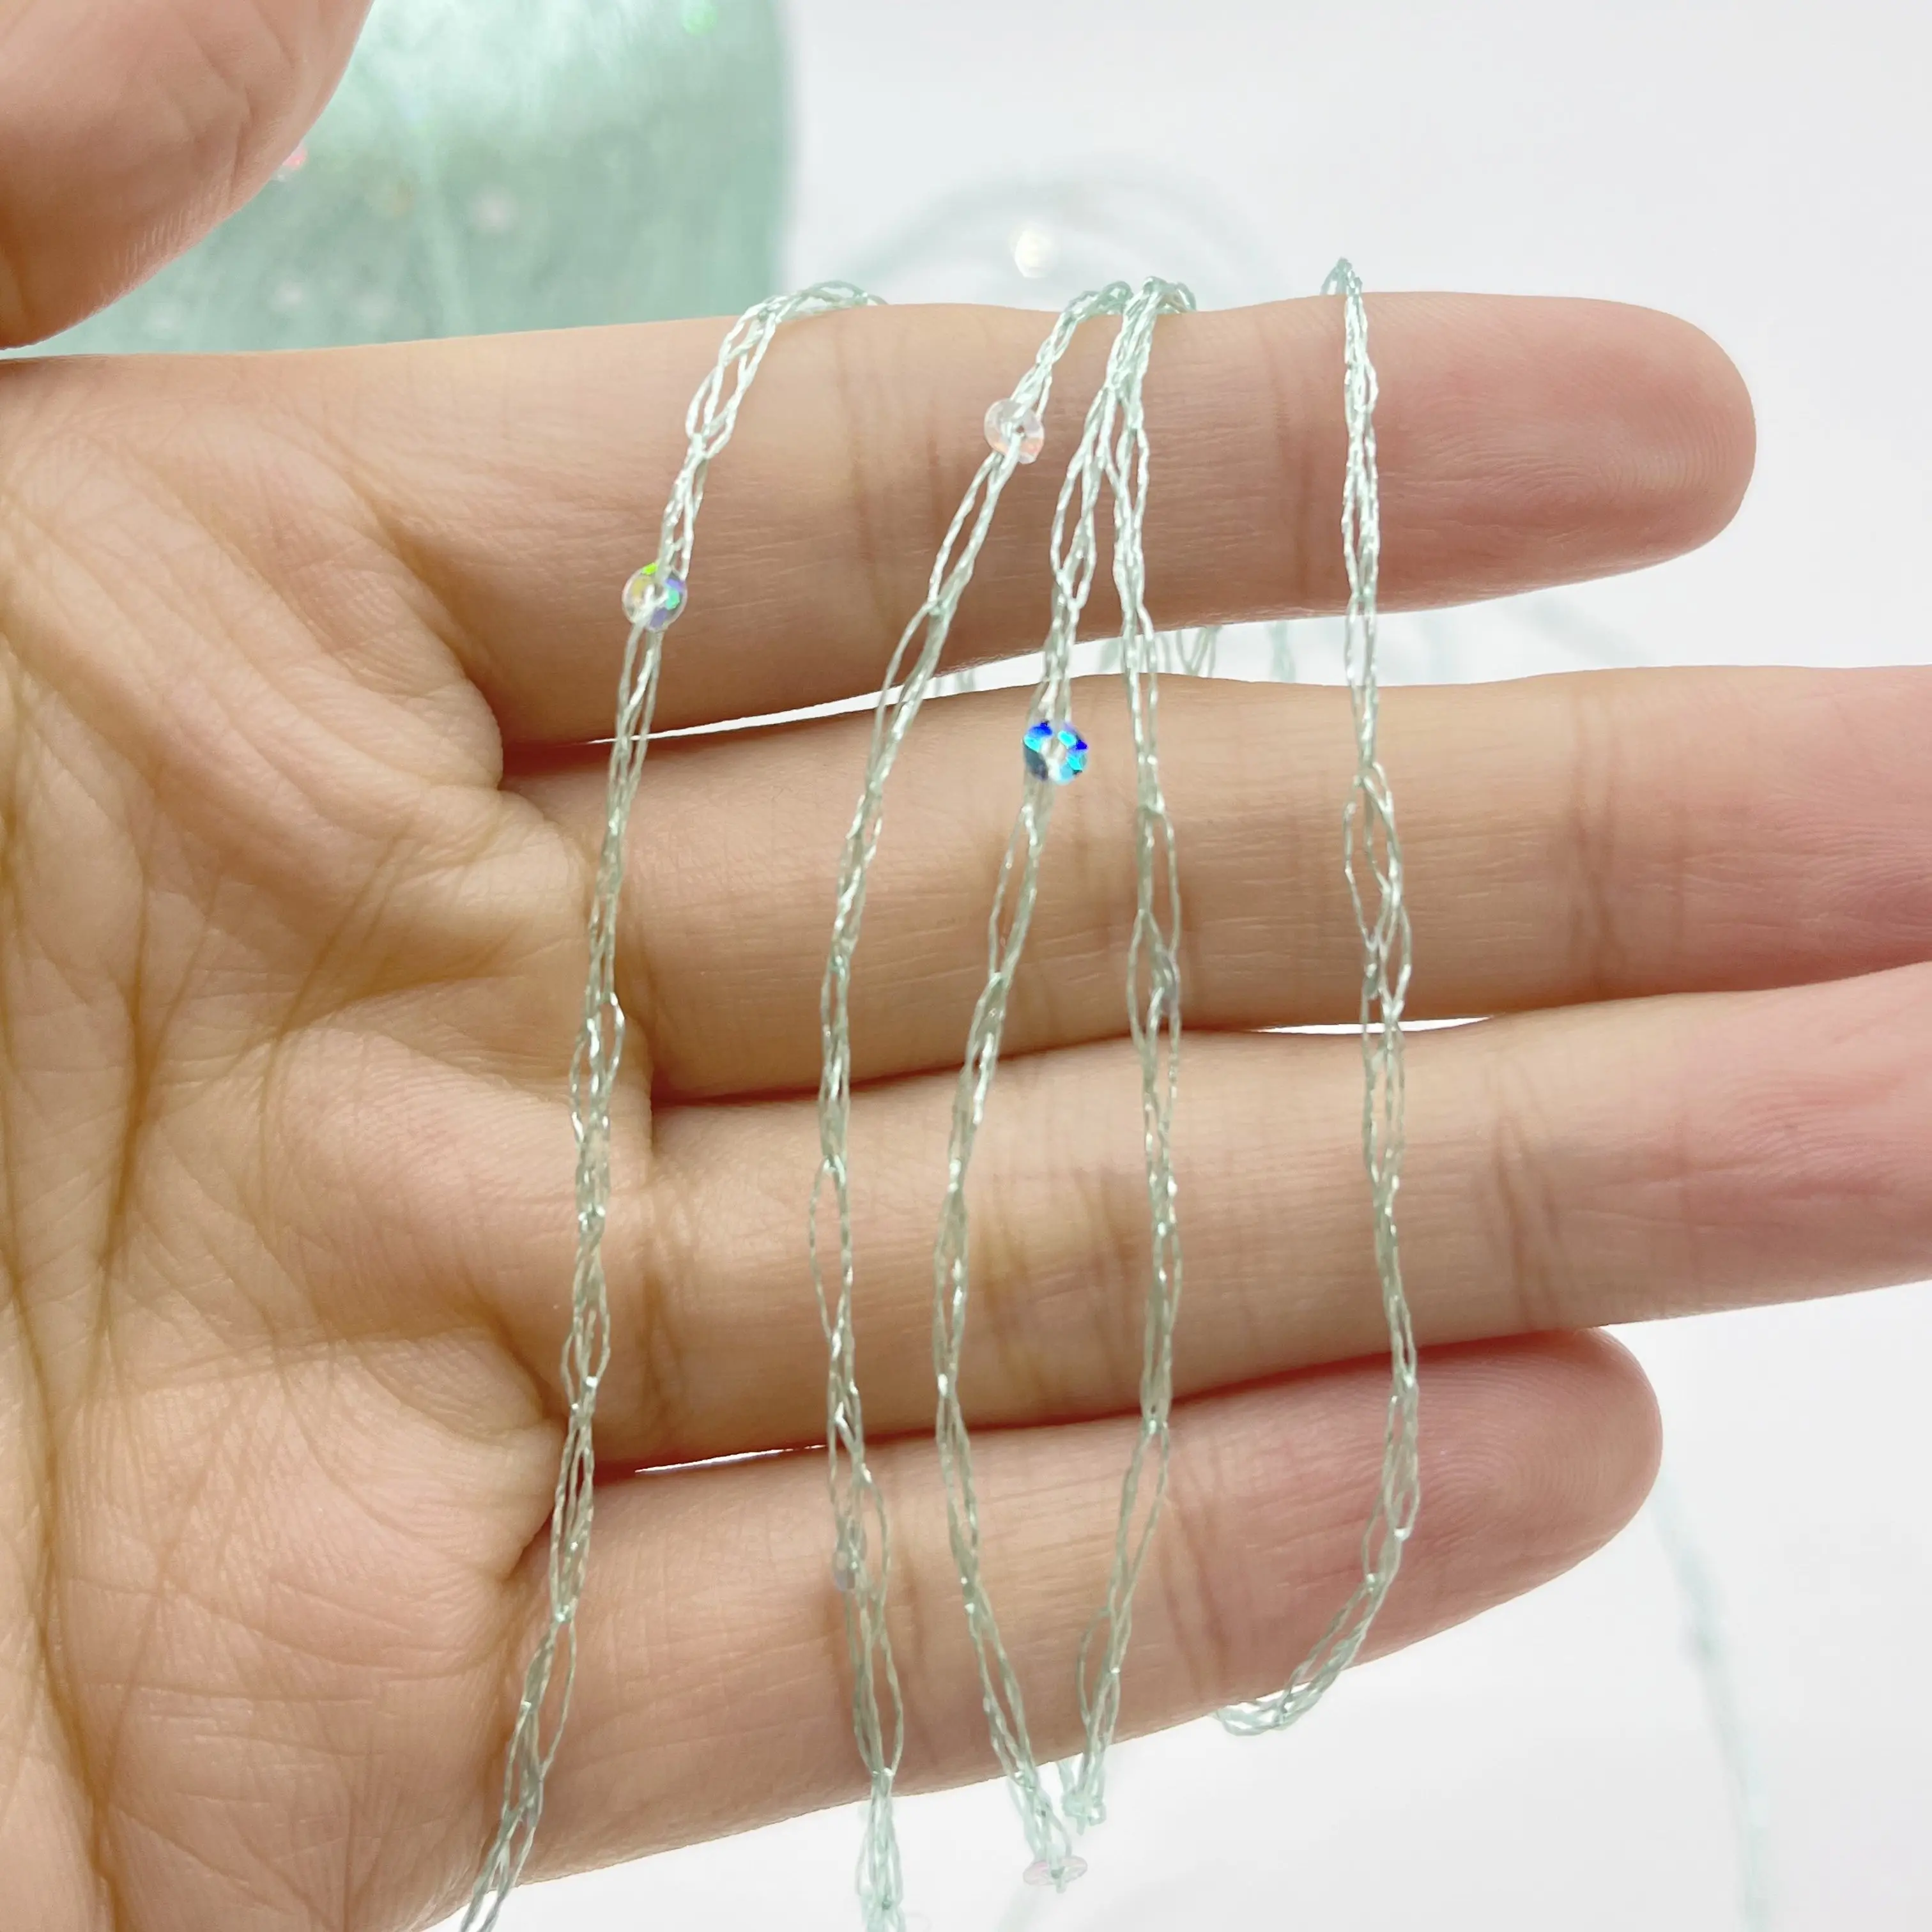 スパンコールのサイズが異なるカラフルなポリエステル糸が衣服や手工芸品用のパイレットに取り付けられています